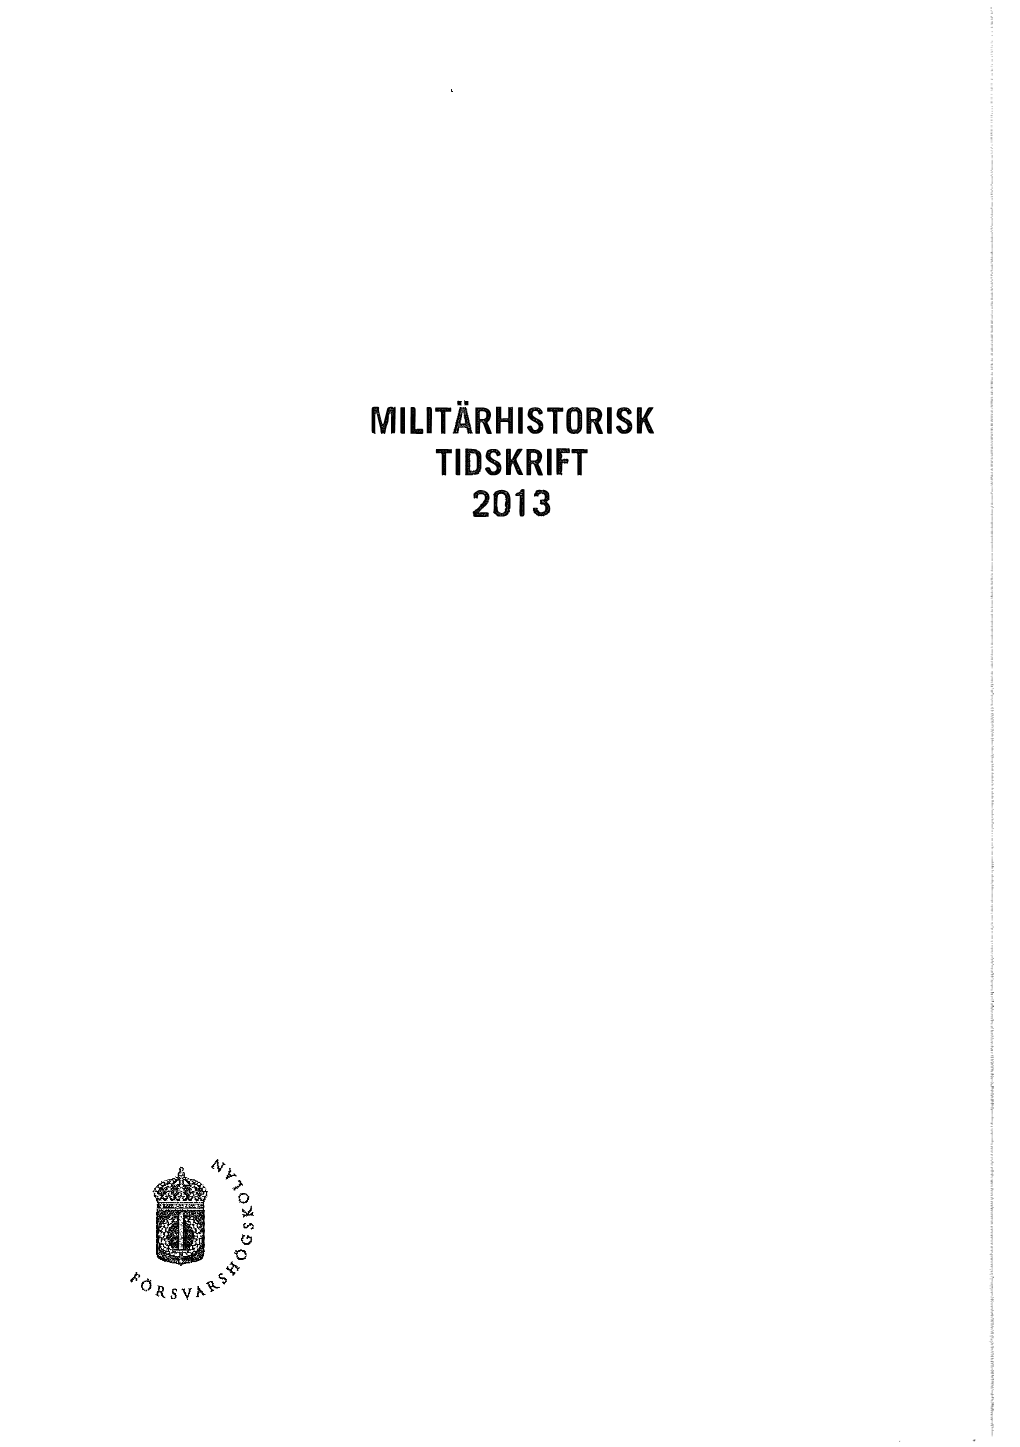 Miutärhistorisk Tidskrift 2013